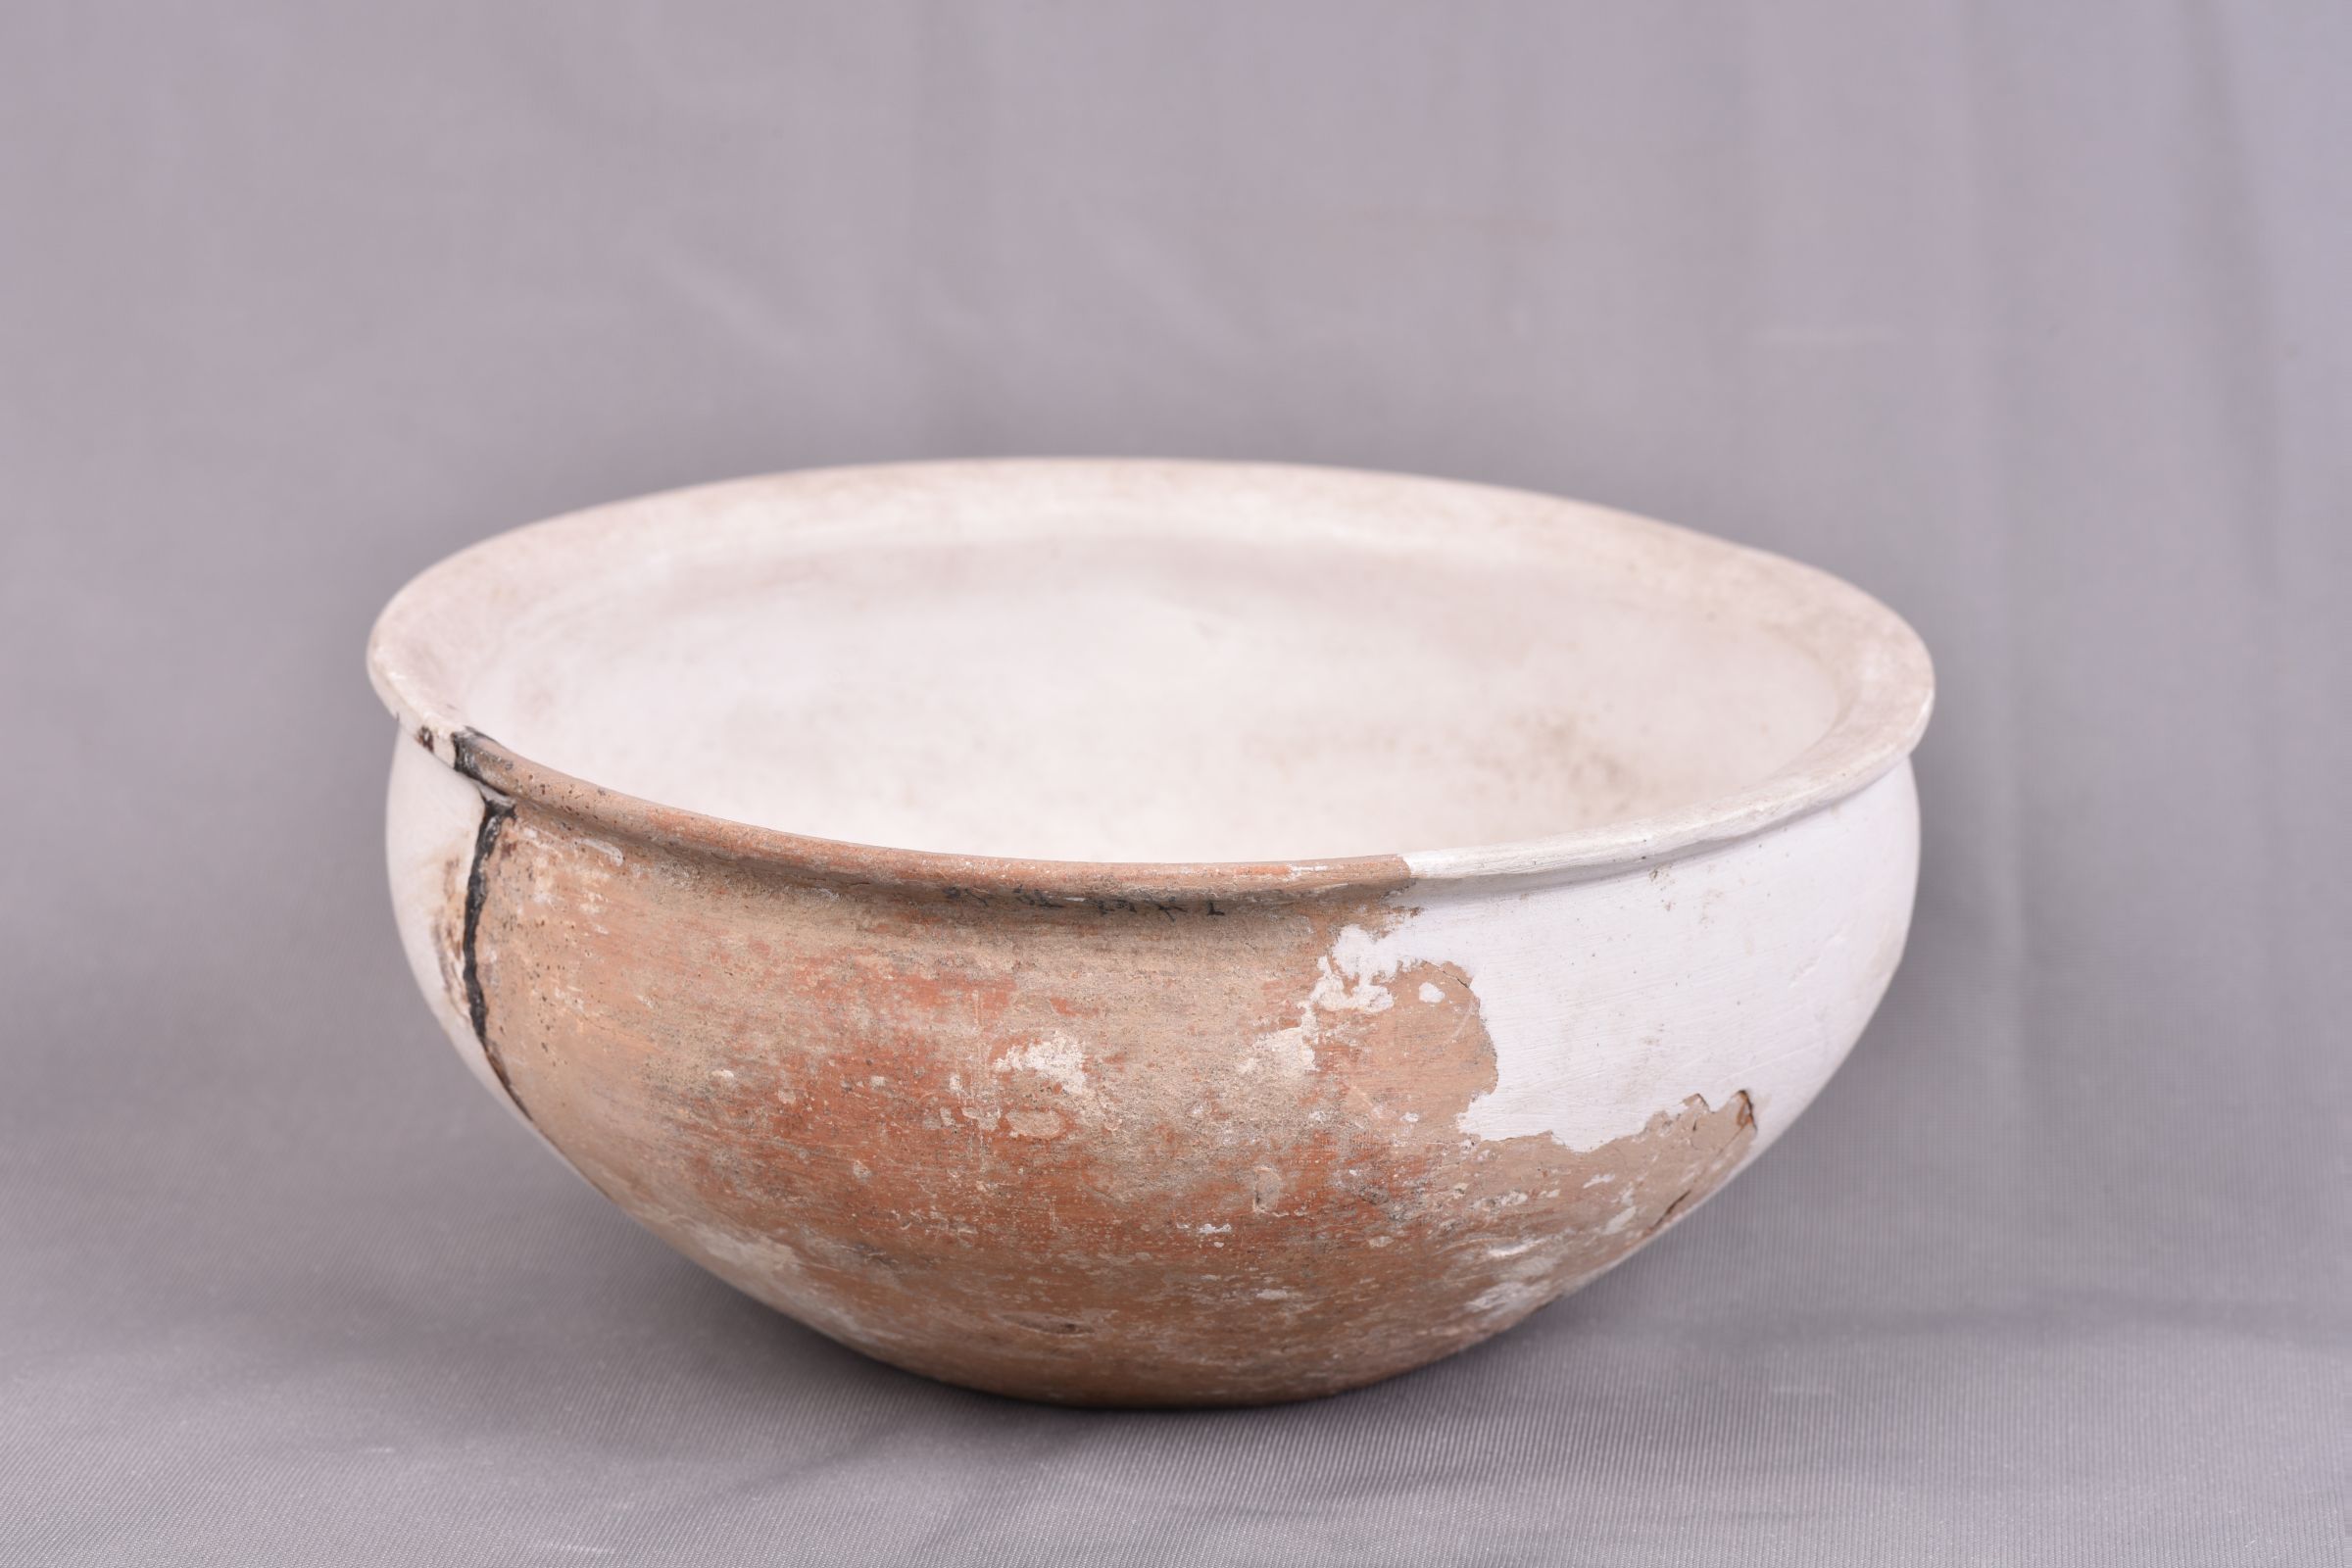 彩陶碗-新石時代-大溪文化-陶瓷館-陶磁館-四川博物院-成都